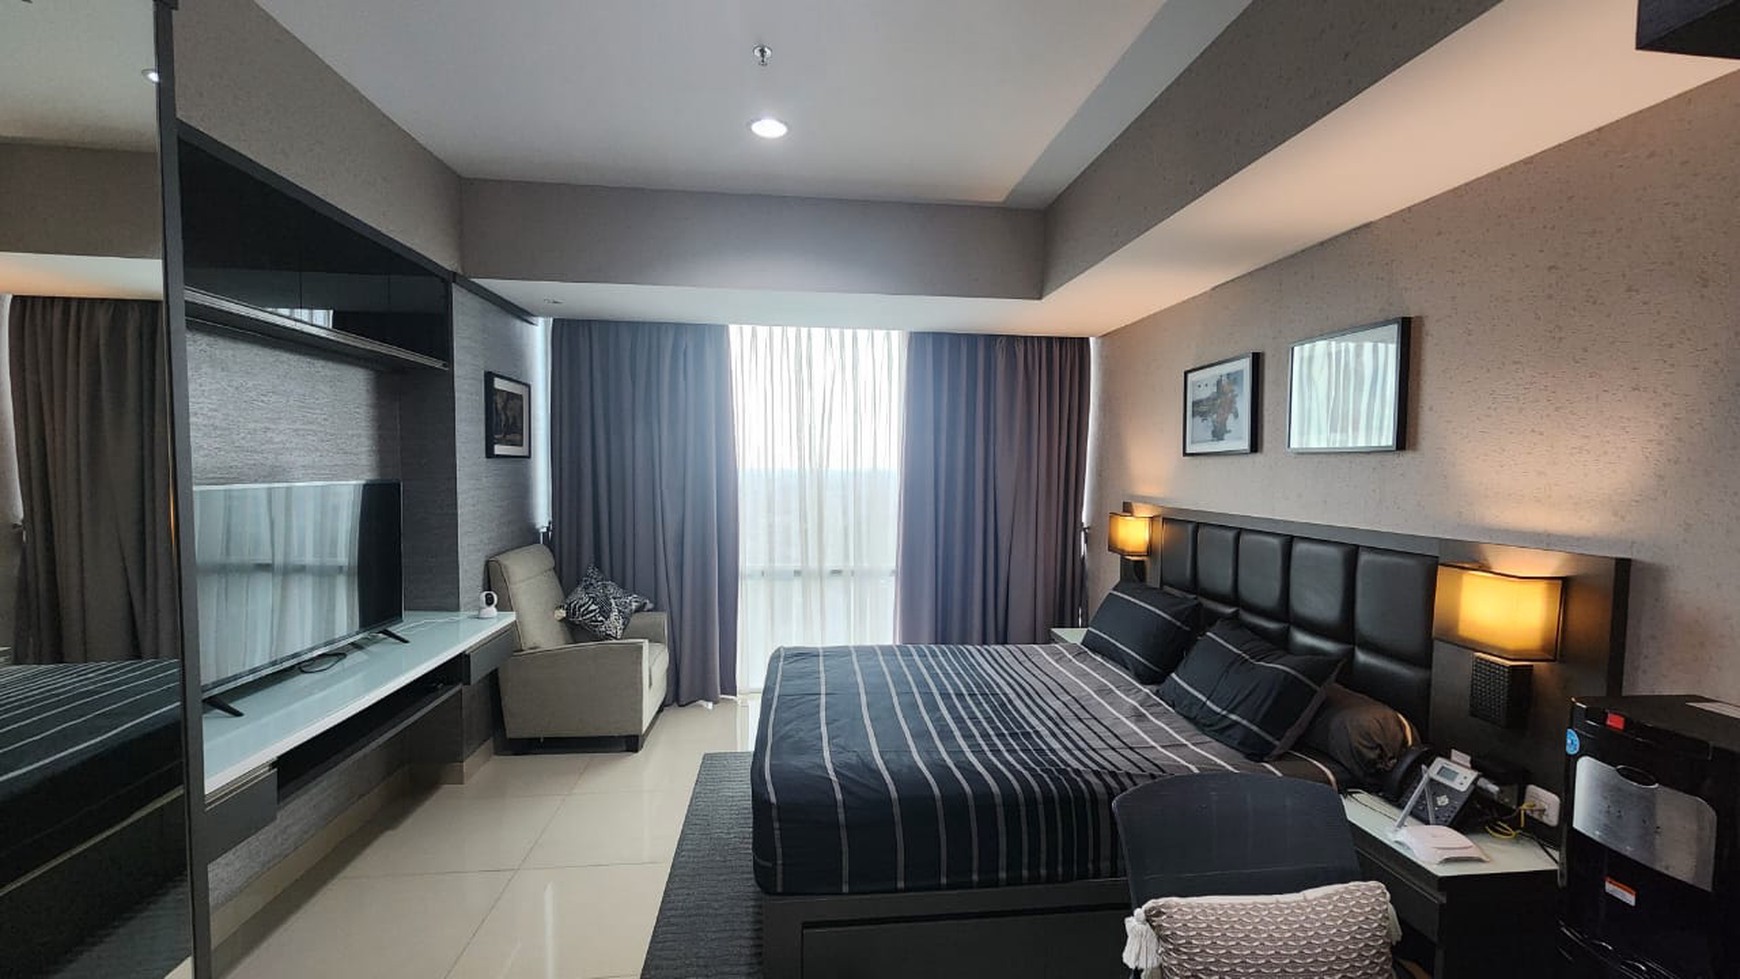 Dijual Apartemen bagus, luxury di U-residence Tower 2 lippo karawaci Tangerang